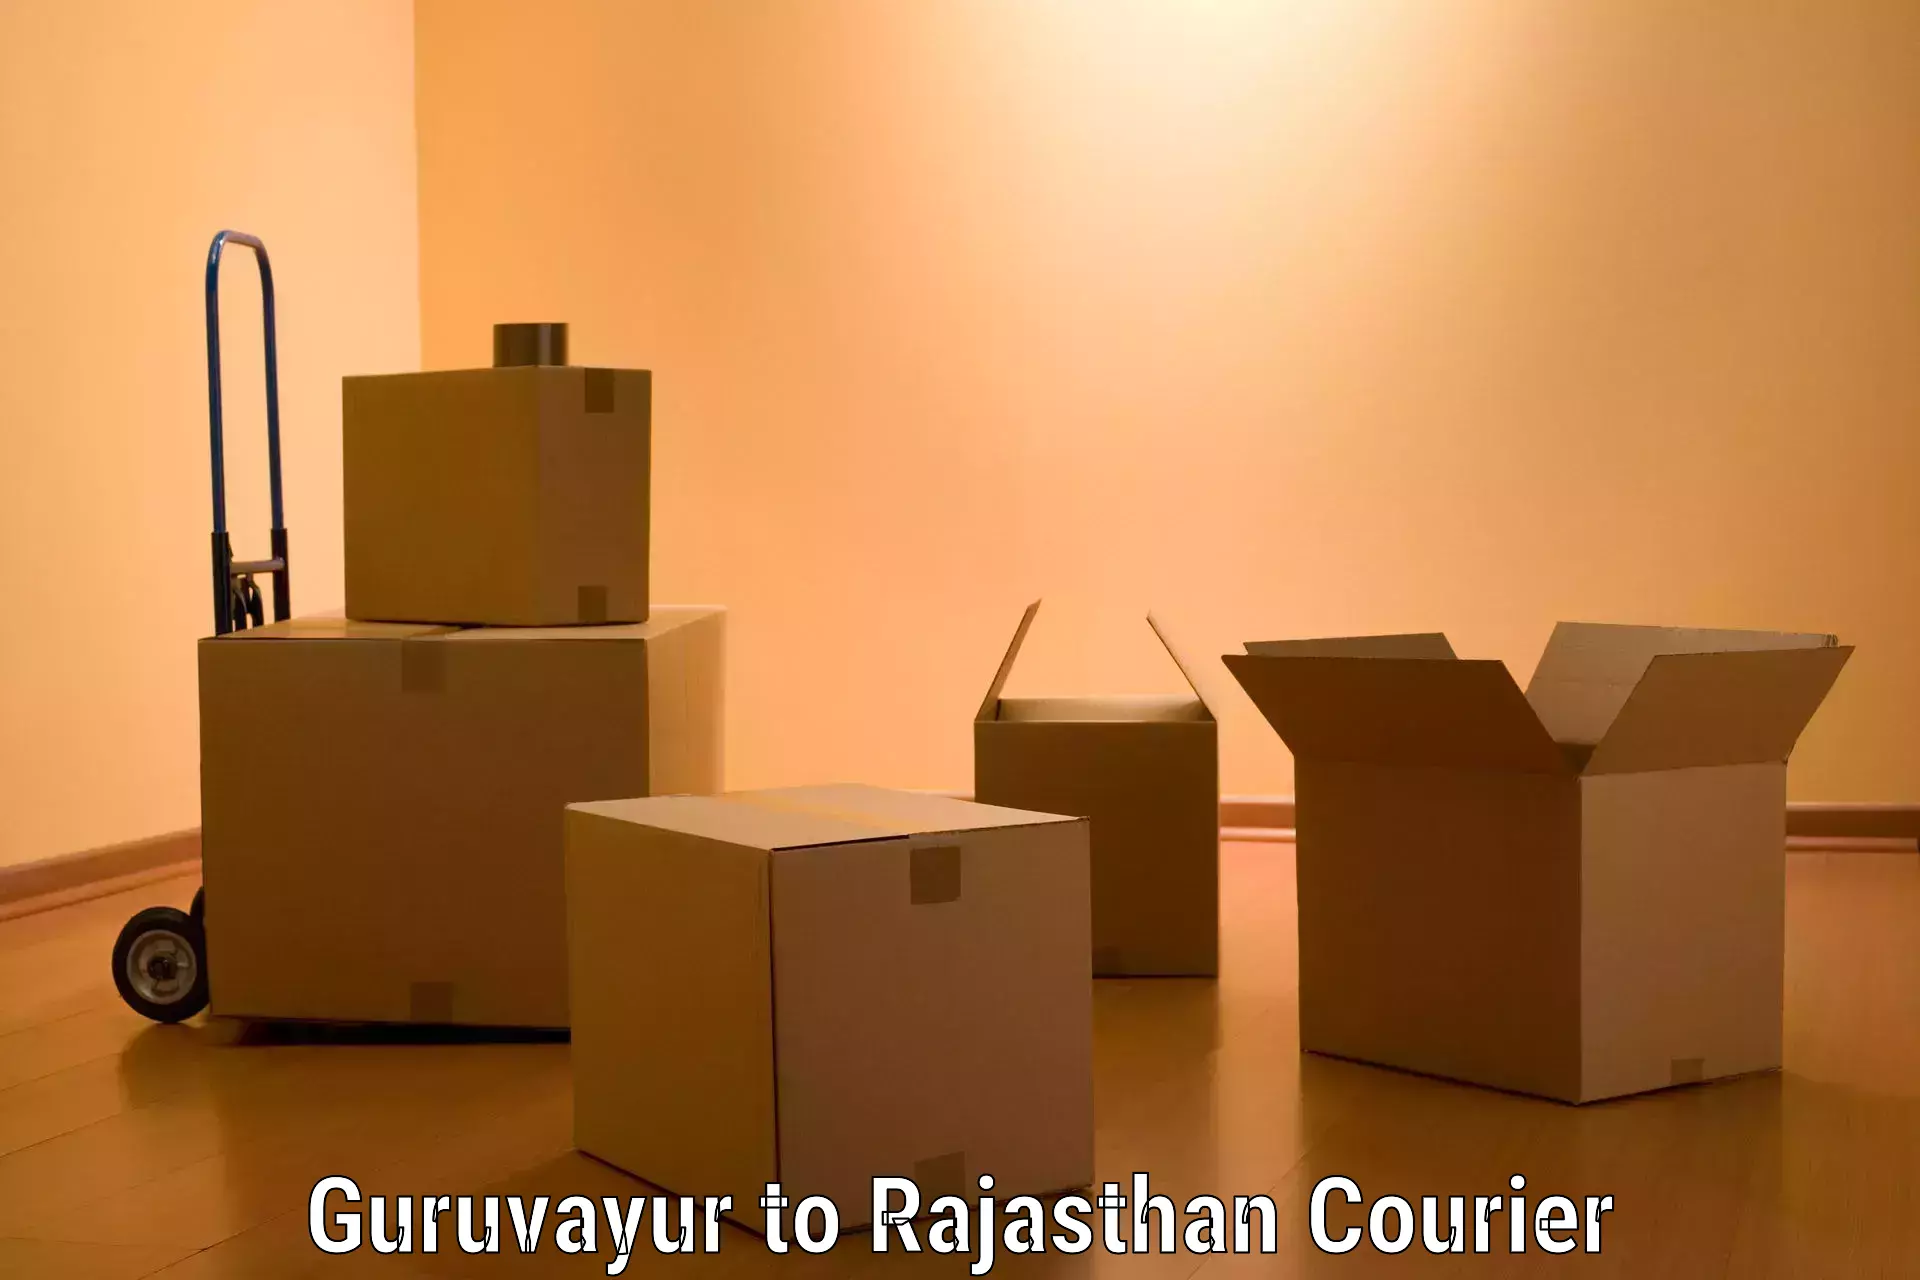 Furniture delivery service Guruvayur to Bhawani Mandi